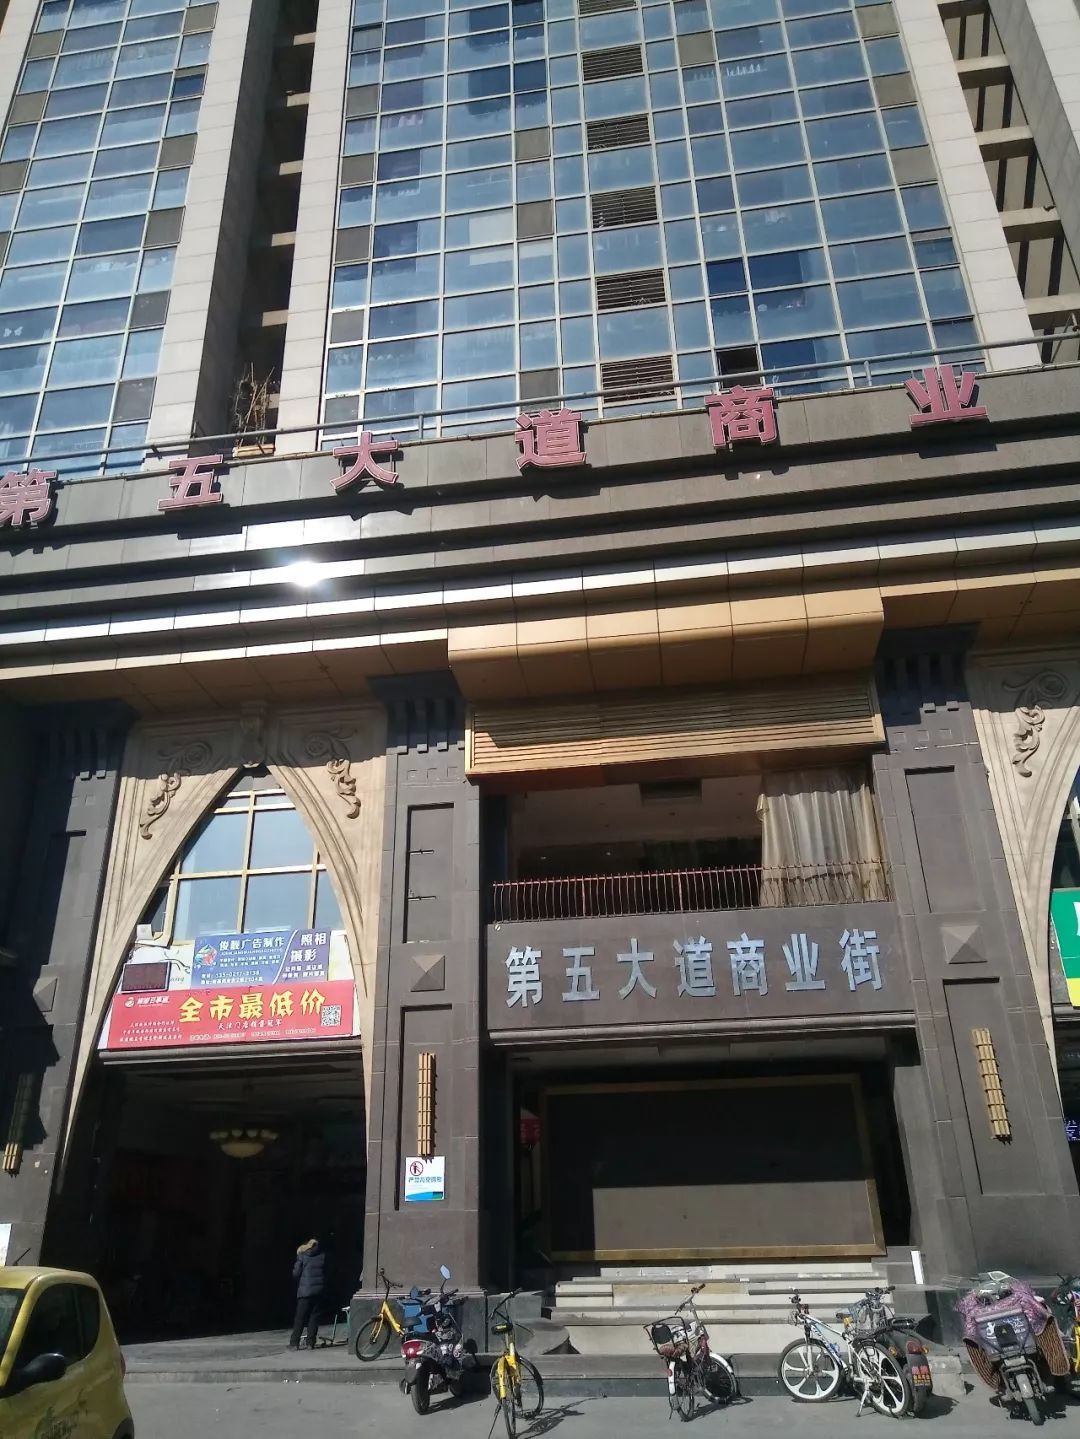 和平区是天津市中心区,诚基中心位于该区南京路上,对天津人而言,南京